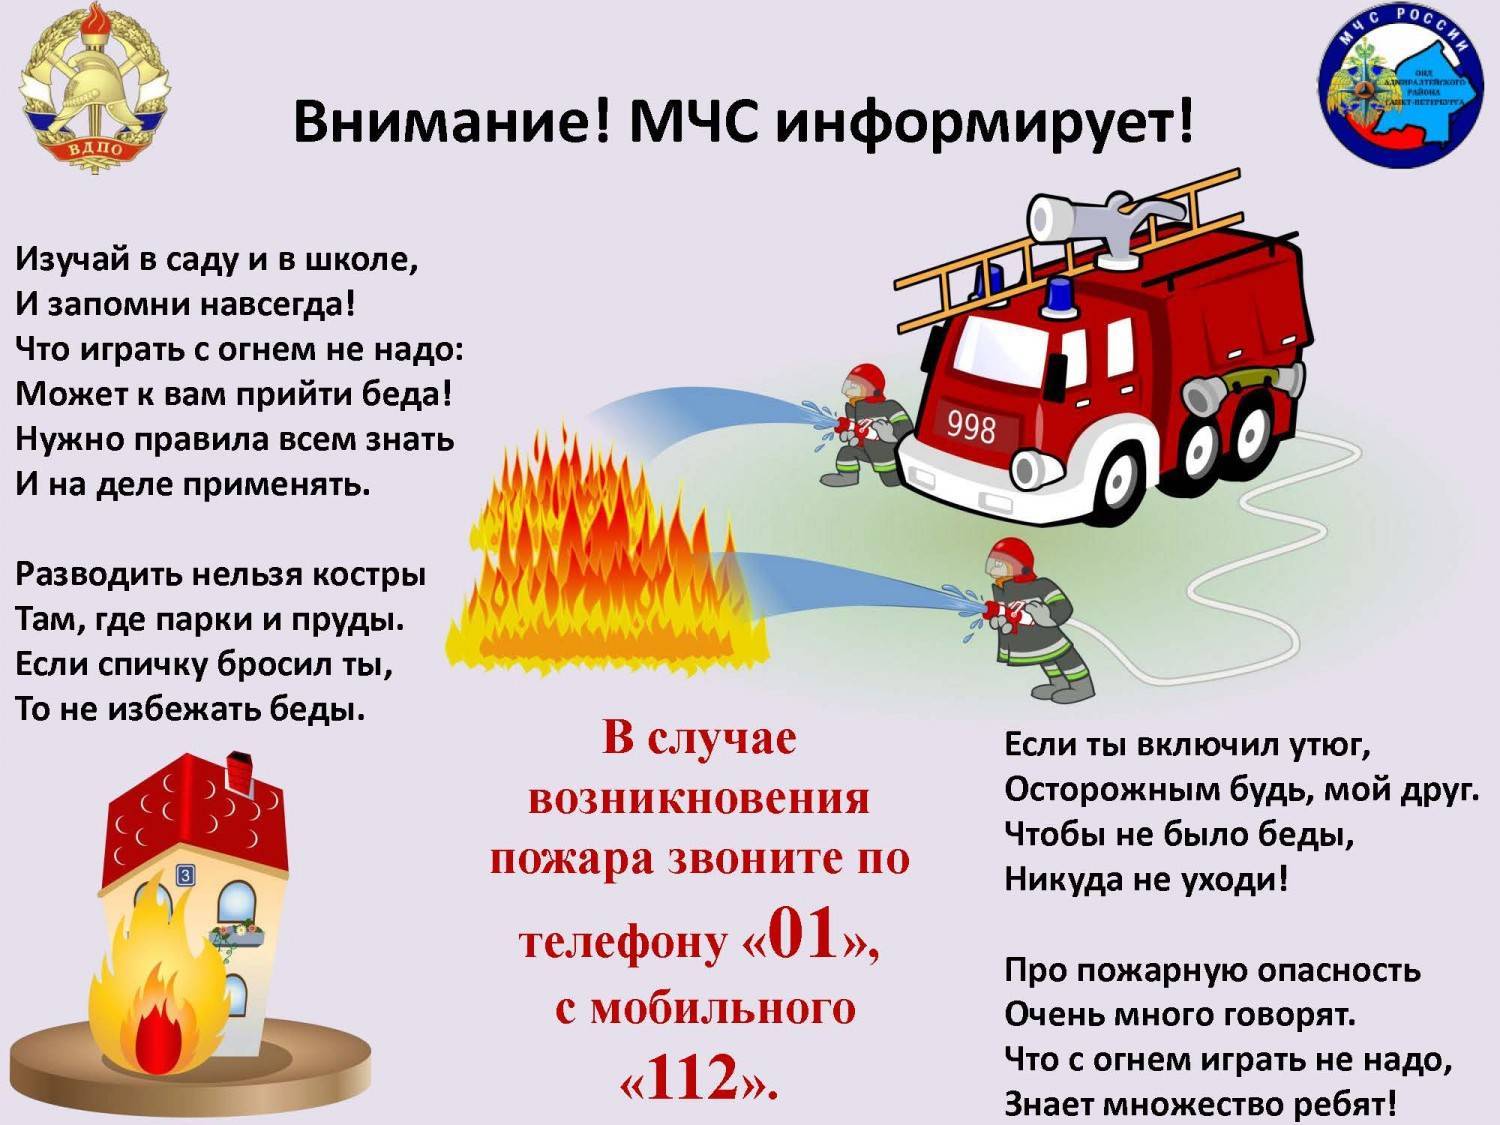 Пожарная безопасность для детей в детском саду, мероприятия, занятия, памятки